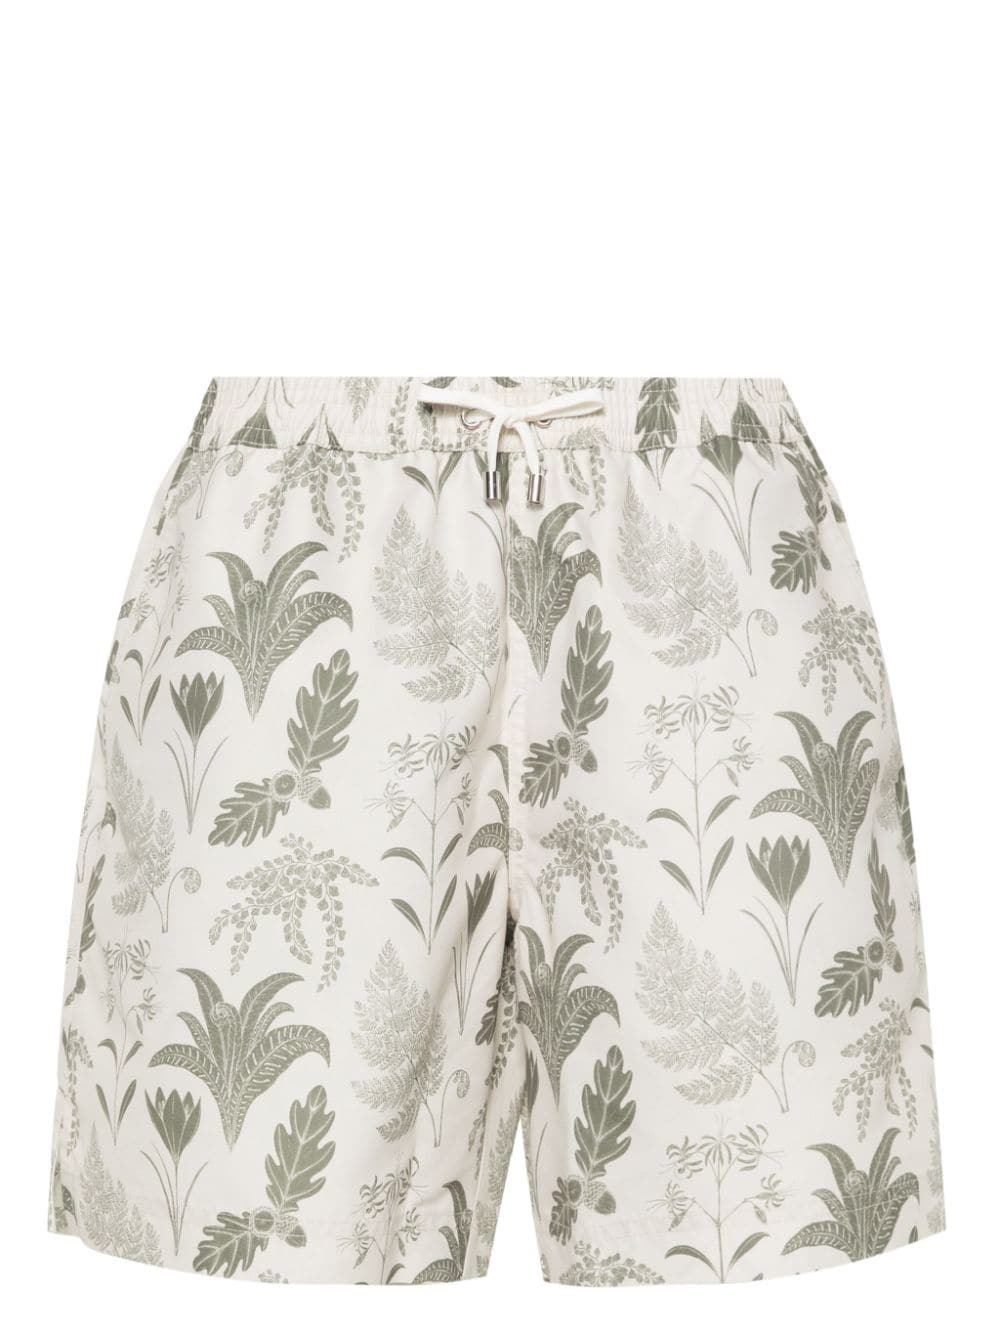 leaf-print swim shorts